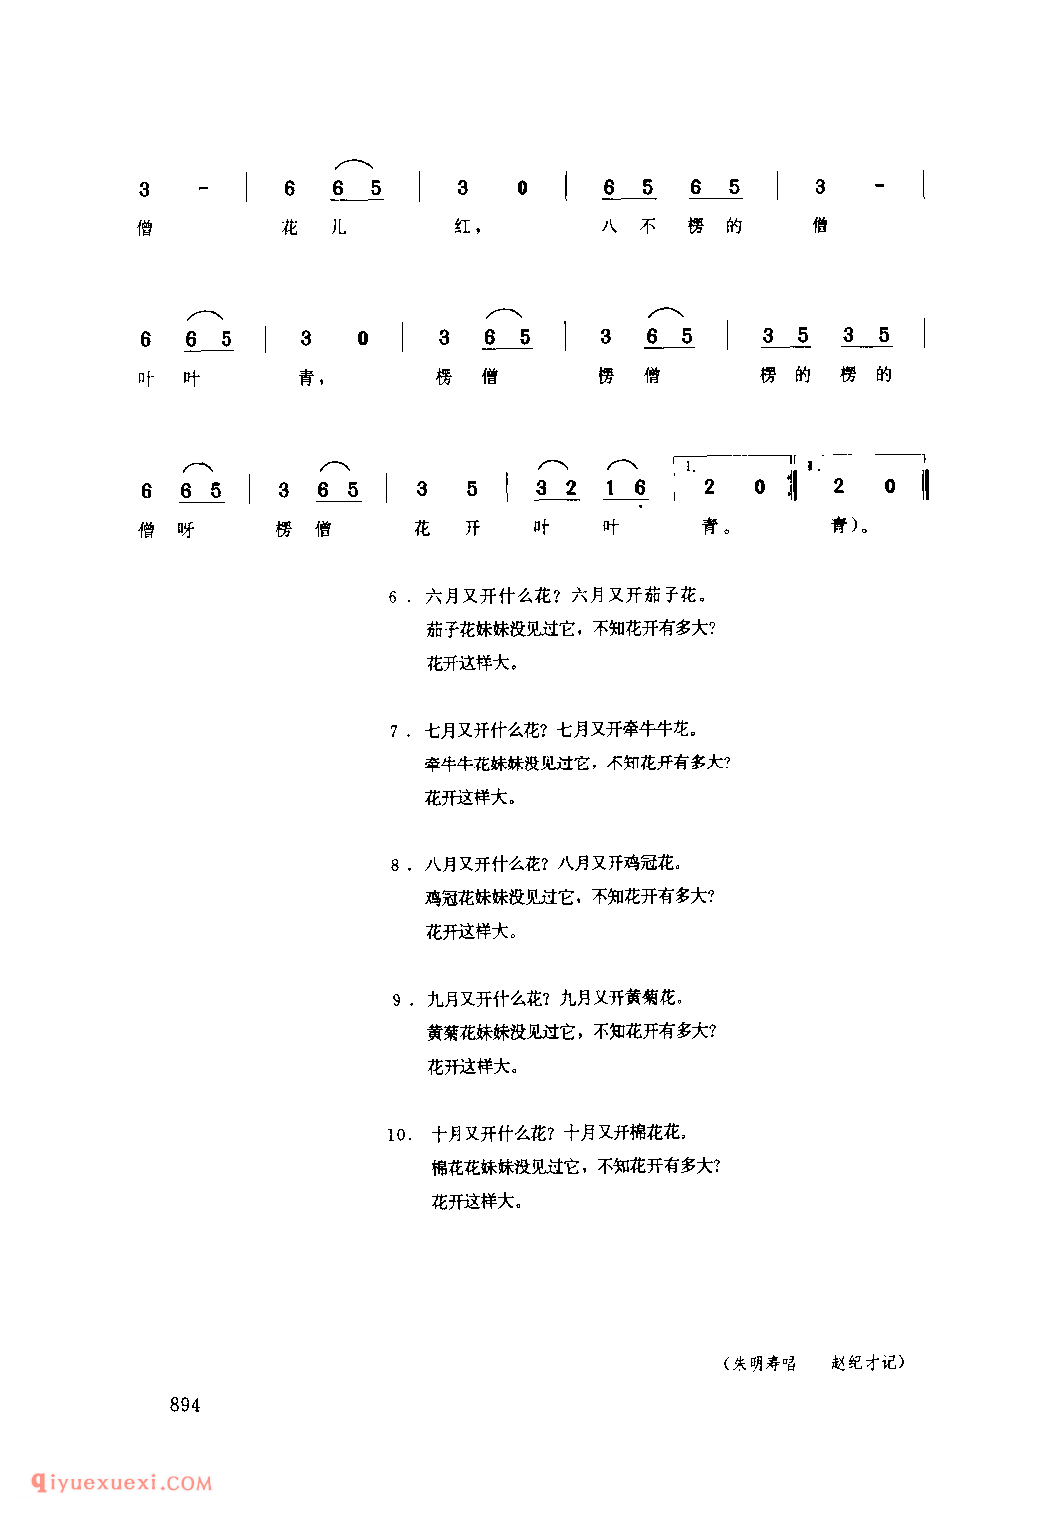 十对花(三)(对子秧歌) 1988年 彬县_社火小调_陕西民歌简谱